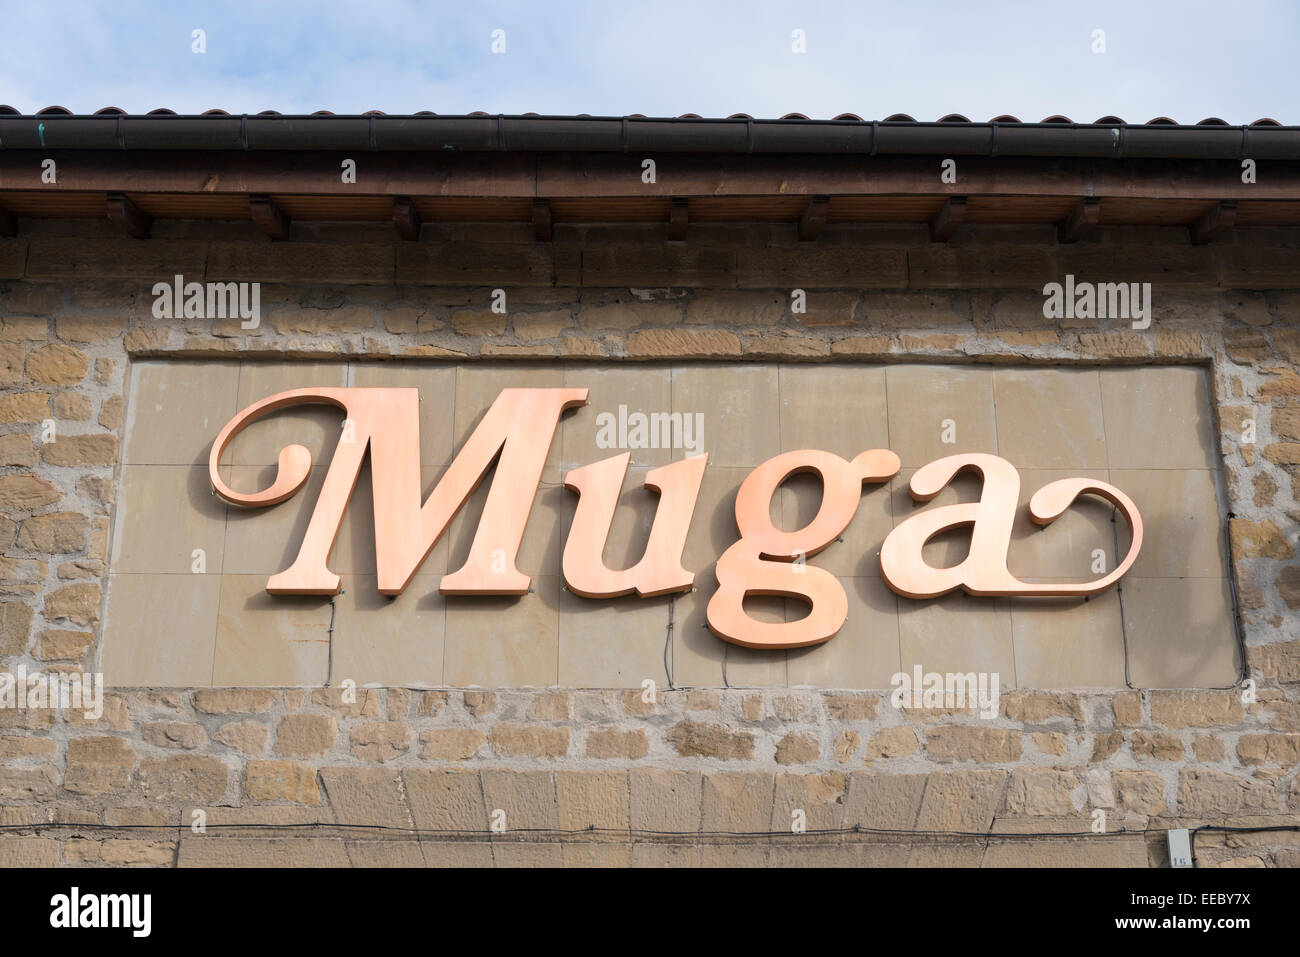 La Muga vineria o Bodega a Haro, la capitale del vino Rioja rendendo area in Spagna Foto Stock